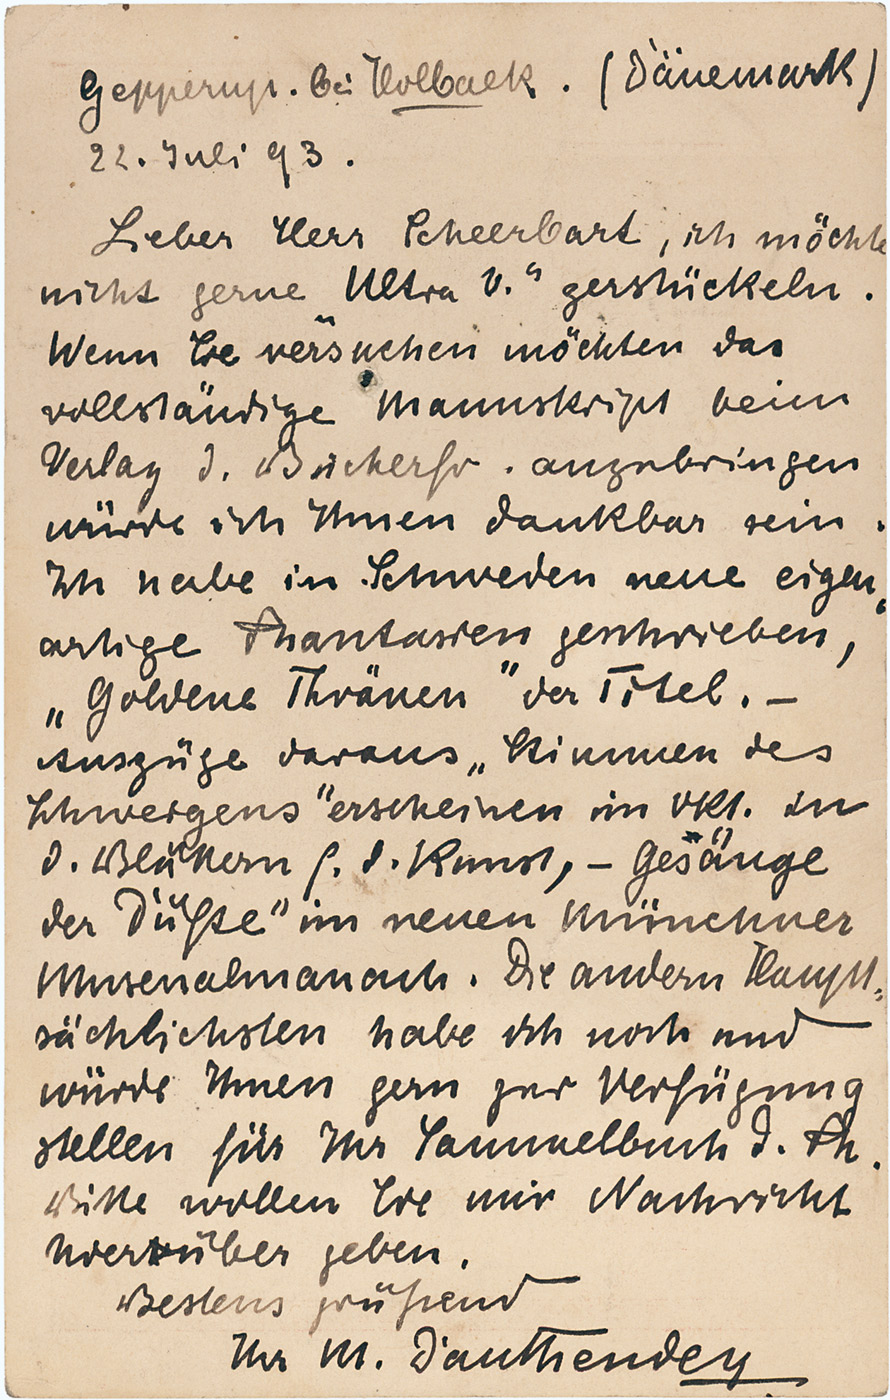 Dauthendey, Max: 2 Postkarten 1893 an Paul Scheerbart  "neue eigenartige Phantasien"  - 2 eigh.